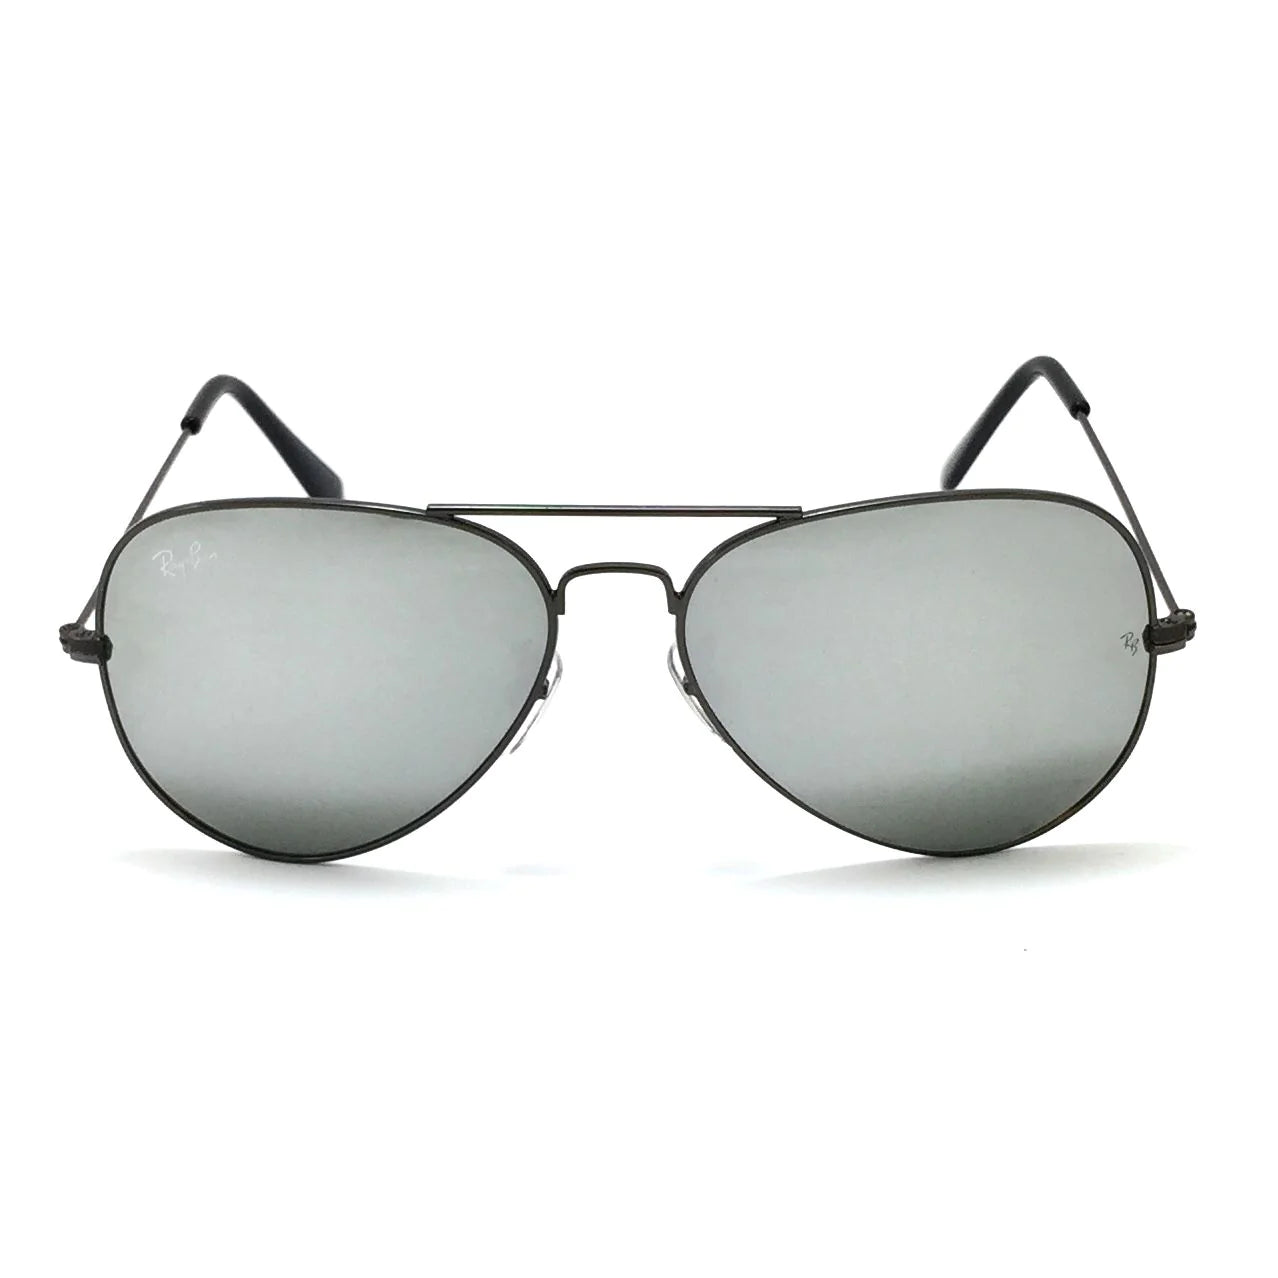 نظارة شمسية افيتور بيضاوية الشكل من ريبان RB3025